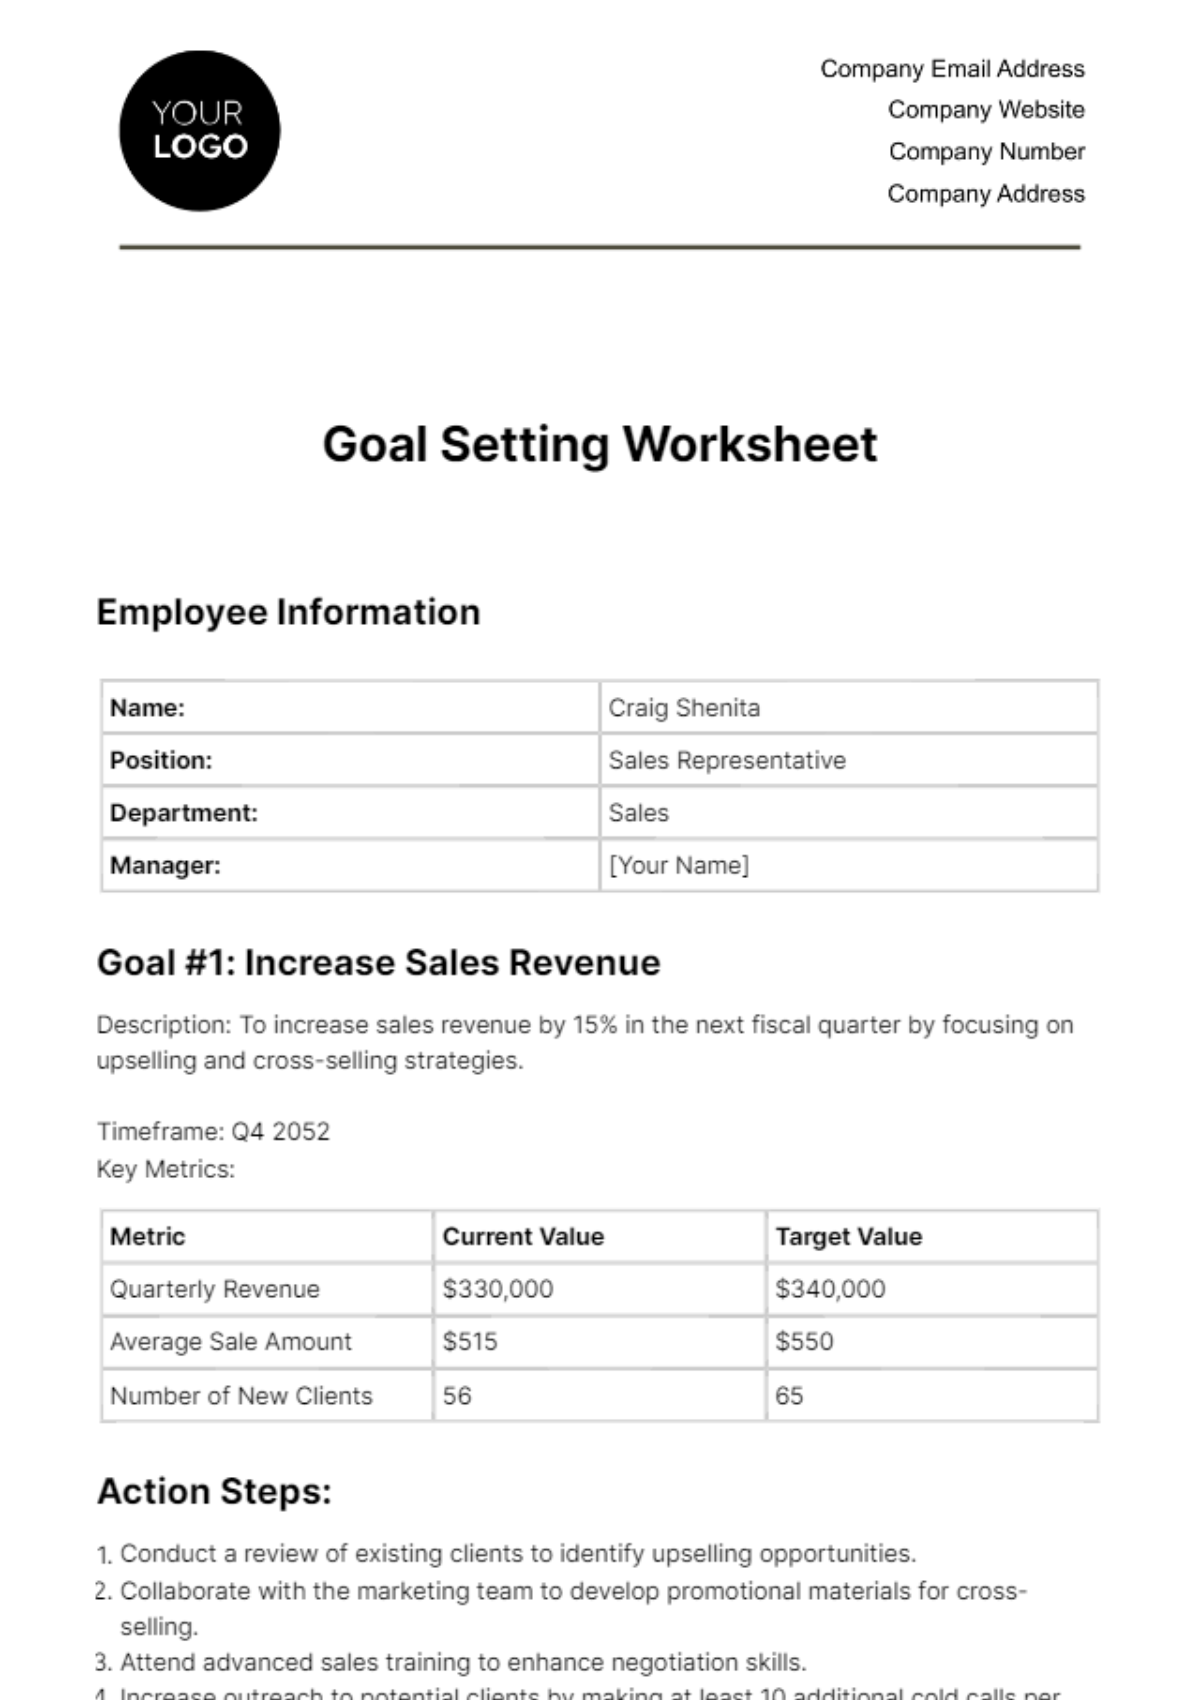 Goal Setting Worksheet HR Template